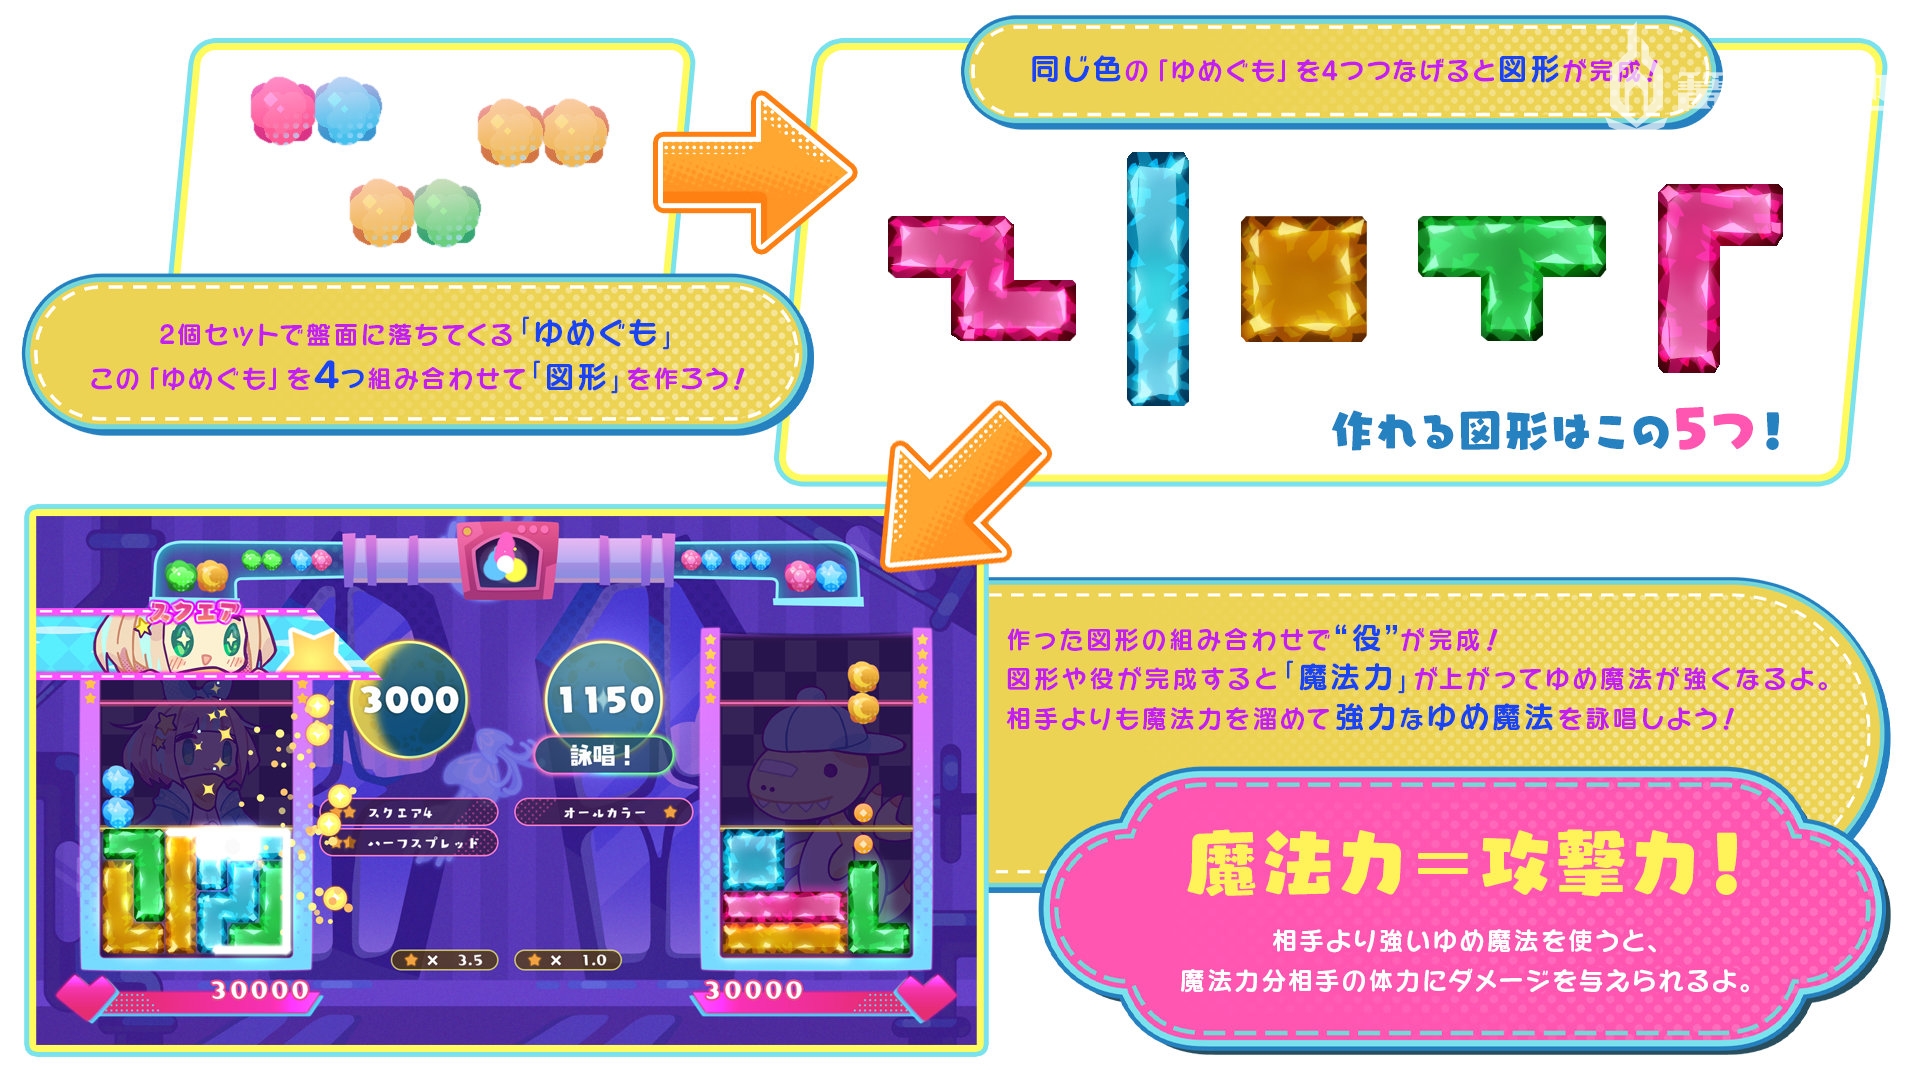 日本一对战益智新作《梦色尤拉姆》试玩版 8 月 24 日推出